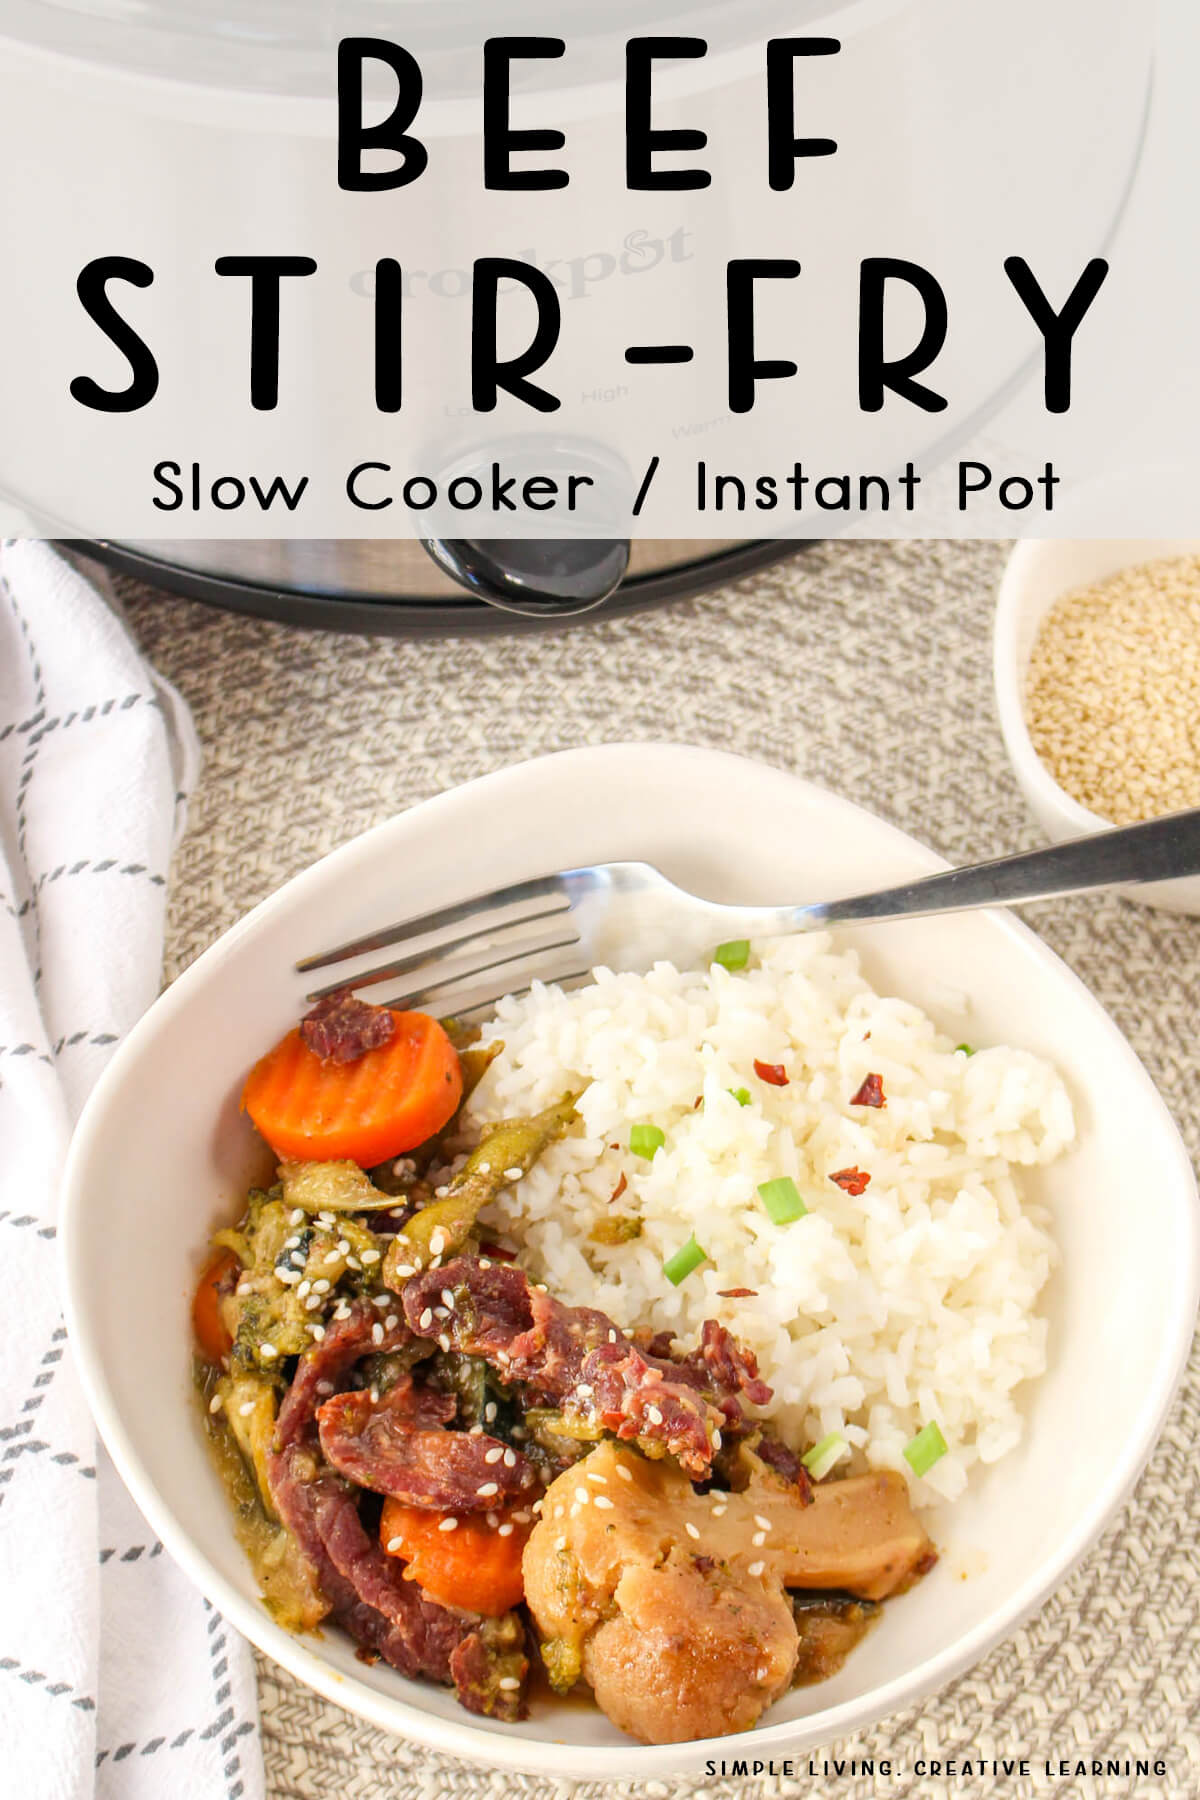 Slow Cooker / Instant Pot Beef Stir-Fry